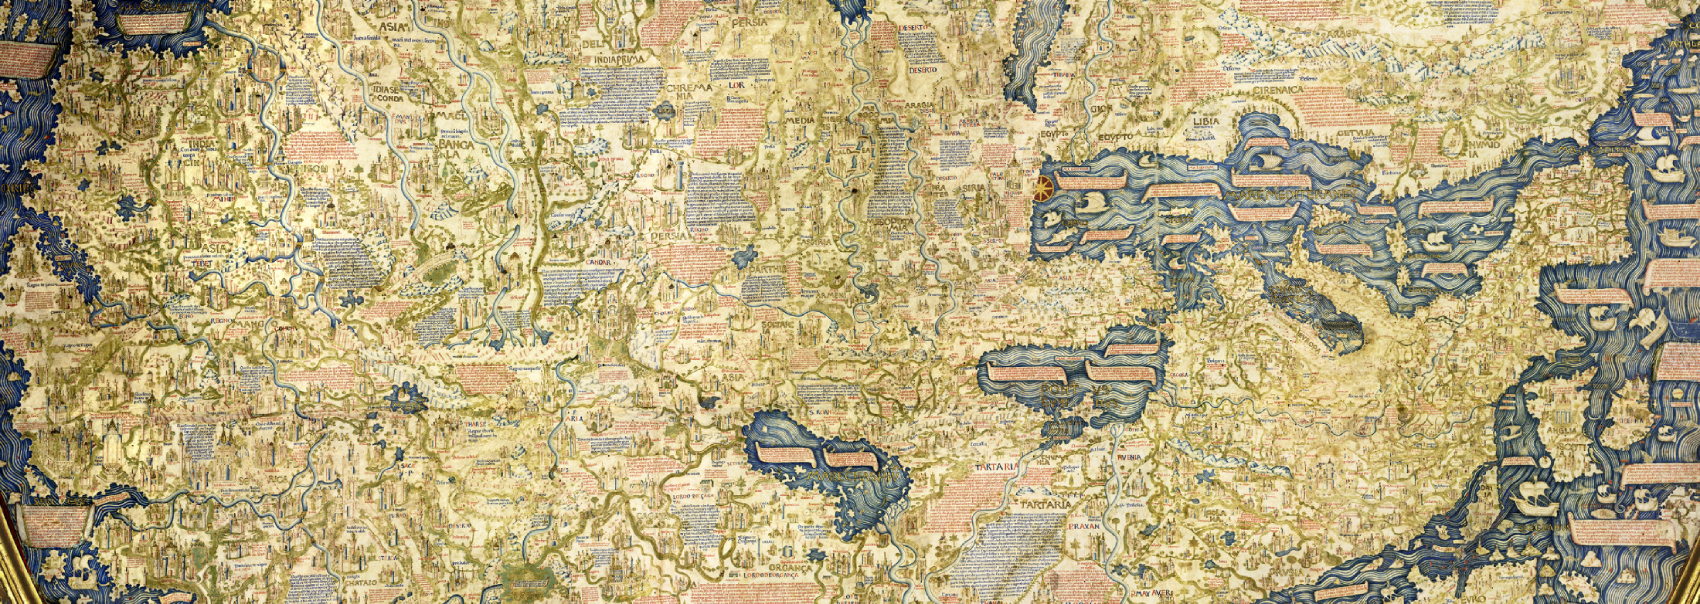 Ausschnitt aus der Weltkarte des Fra Mauro (Venedig, 1460)